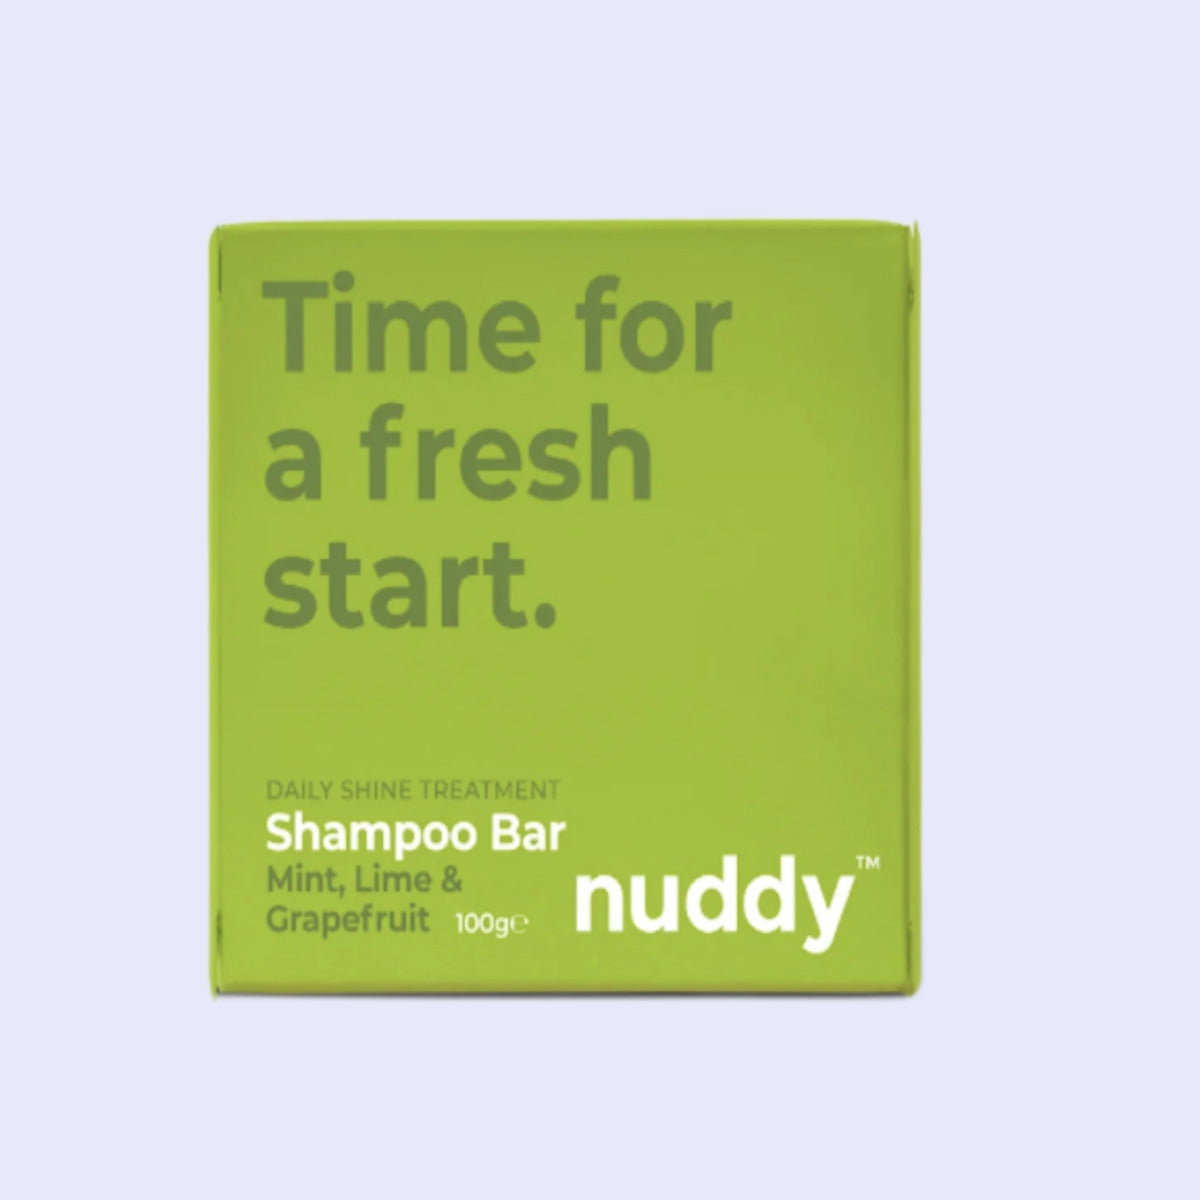 Nuddy - Shampoo Bar Daily Shine Treatment Mint , Lime & Grapefruit